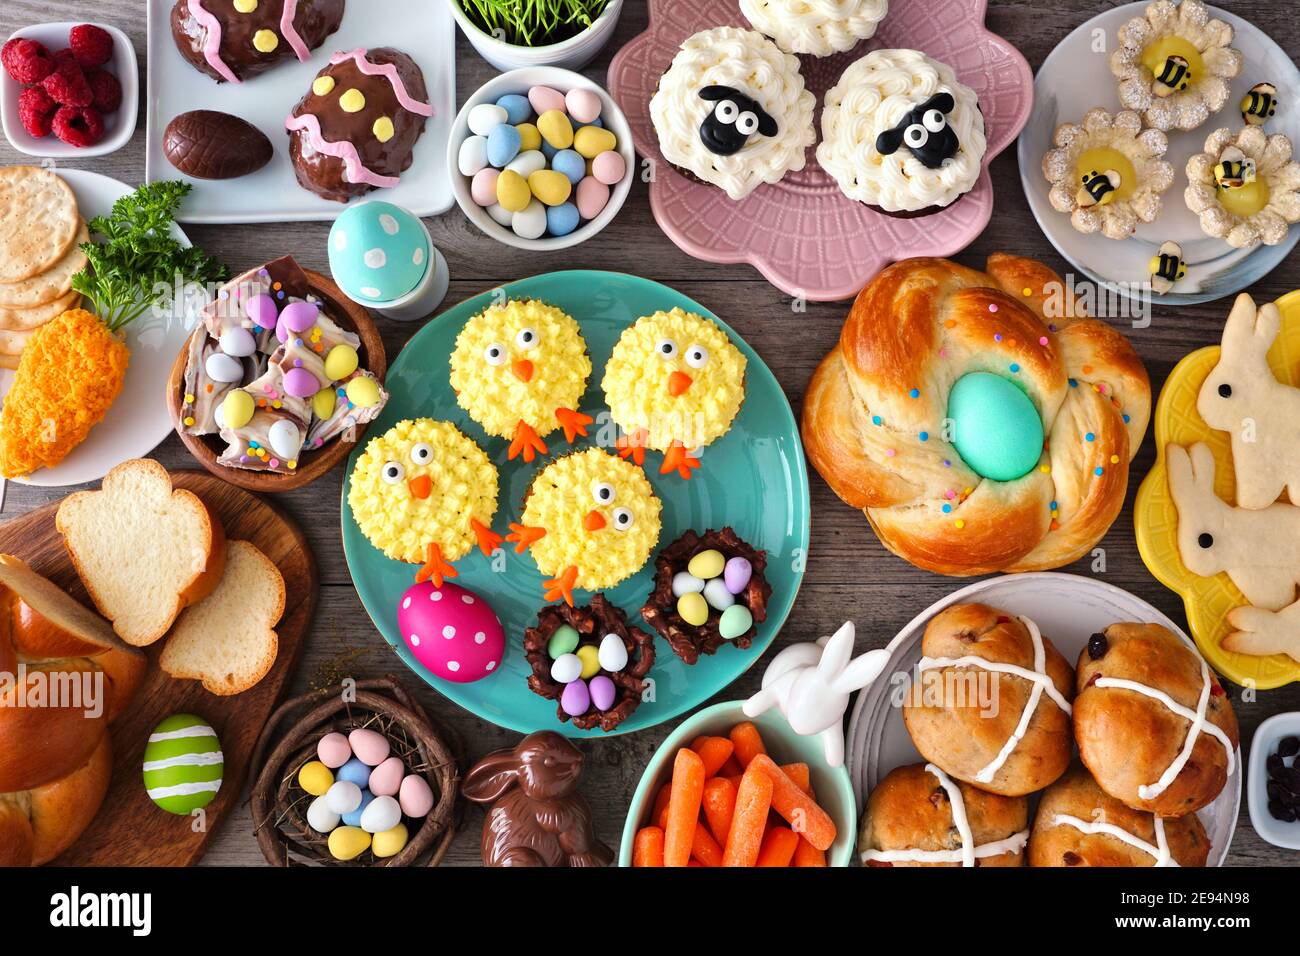 Ostertisch-Szene mit einer Auswahl an Broten, Desserts und Leckereien. Draufsicht über einen Holzhintergrund. Frühlingsurlaub Essen Konzept. Stockfoto